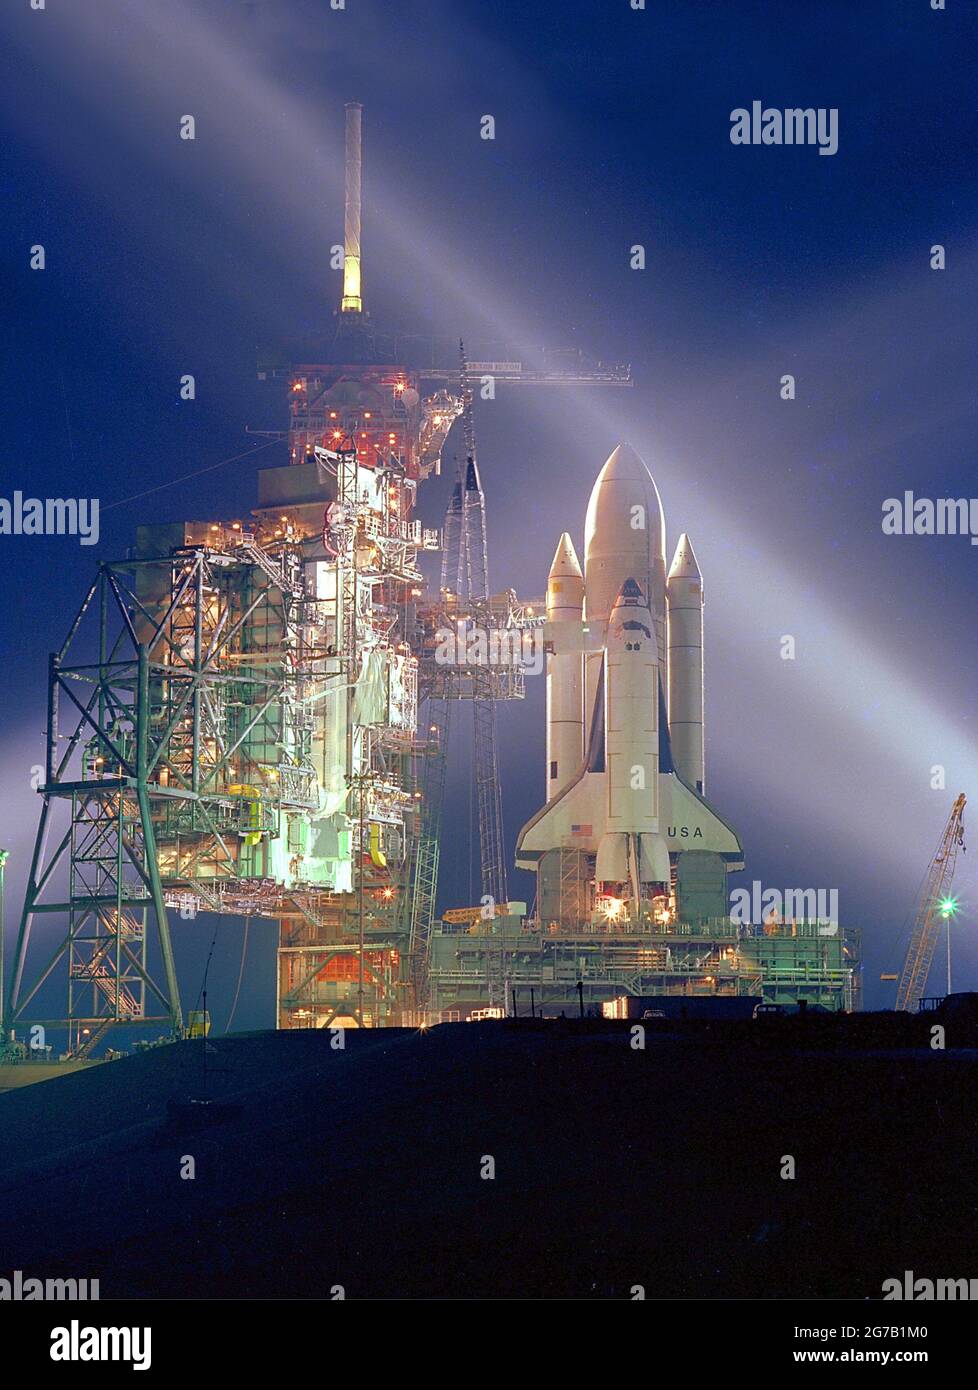 Pré-lancement STS-1. STS-1 (système de transport spatial 1) était le premier vol spatial orbital du programme de la navette spatiale de la NASA. Une nouvelle ère de vol spatial a commencé le 12 avril 1981, lorsque la navette spatiale Columbia a grimpé en orbite à partir du Kennedy Space Center de la NASA en Floride. Une version optimisée et améliorée unique d'une NASA image / crédit NASA Banque D'Images